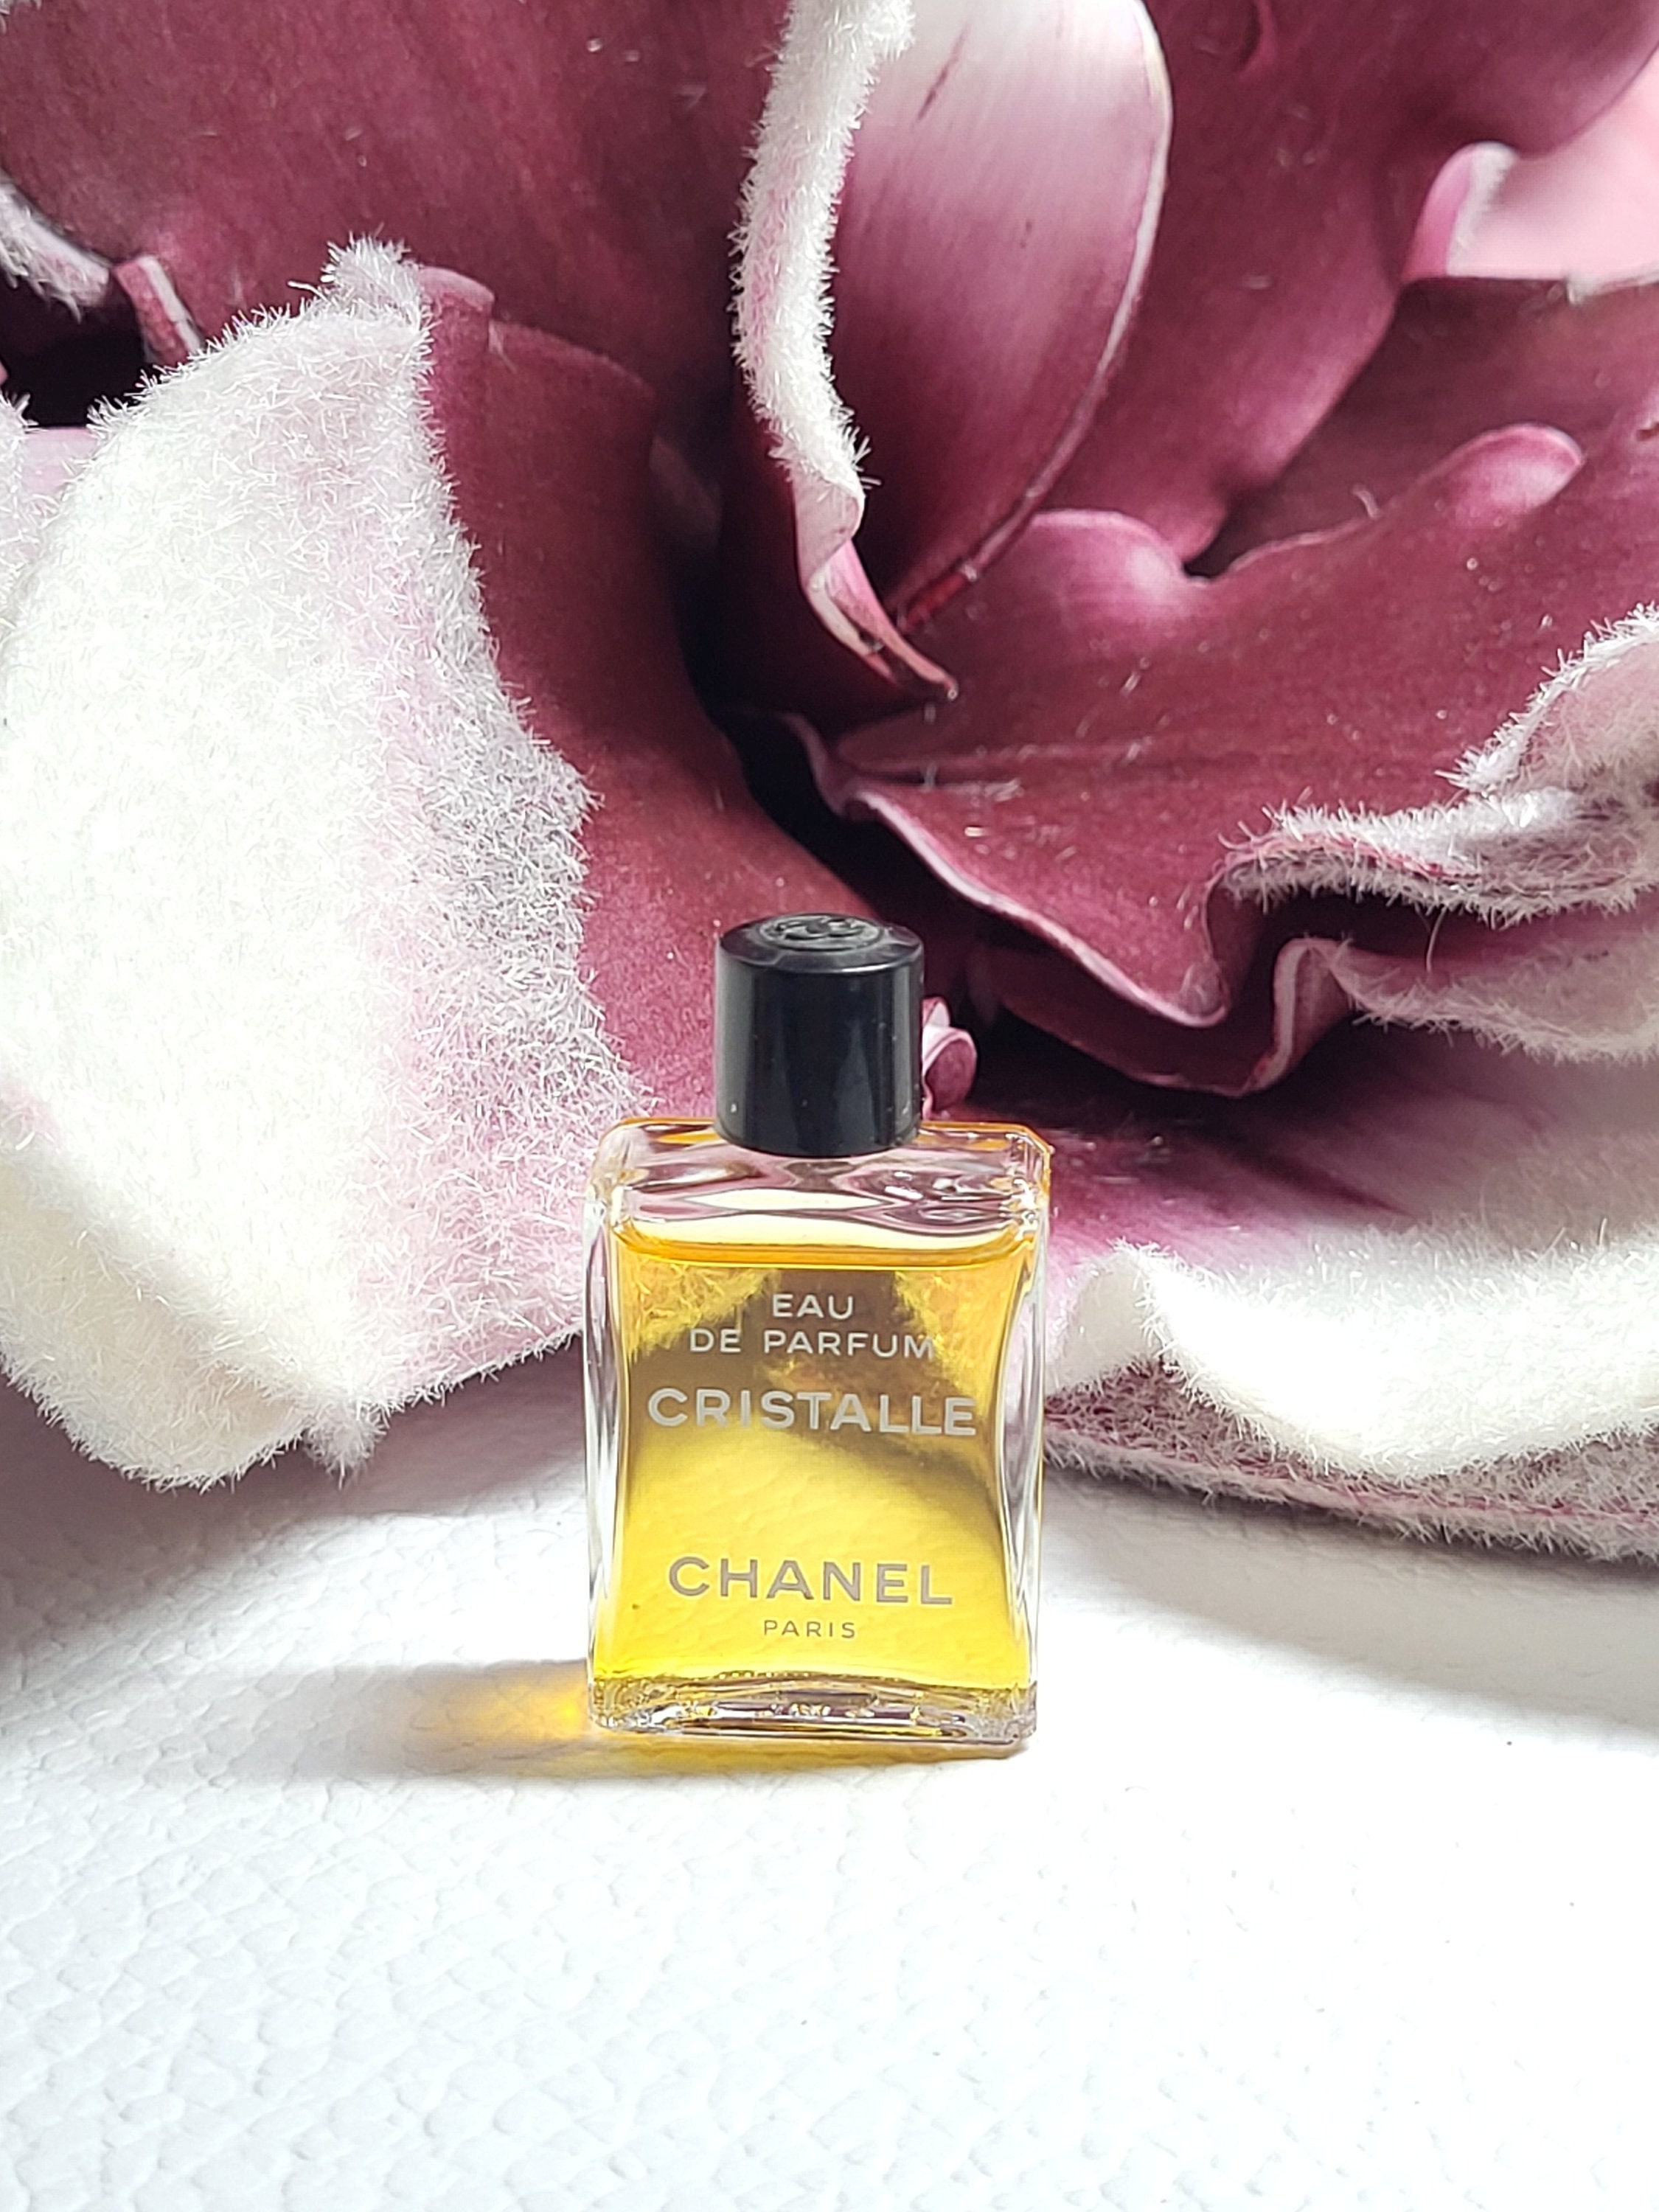 Chanel Cristalle Great Brands Perfume 1993 EAU DE PARFUM 5 Ml 